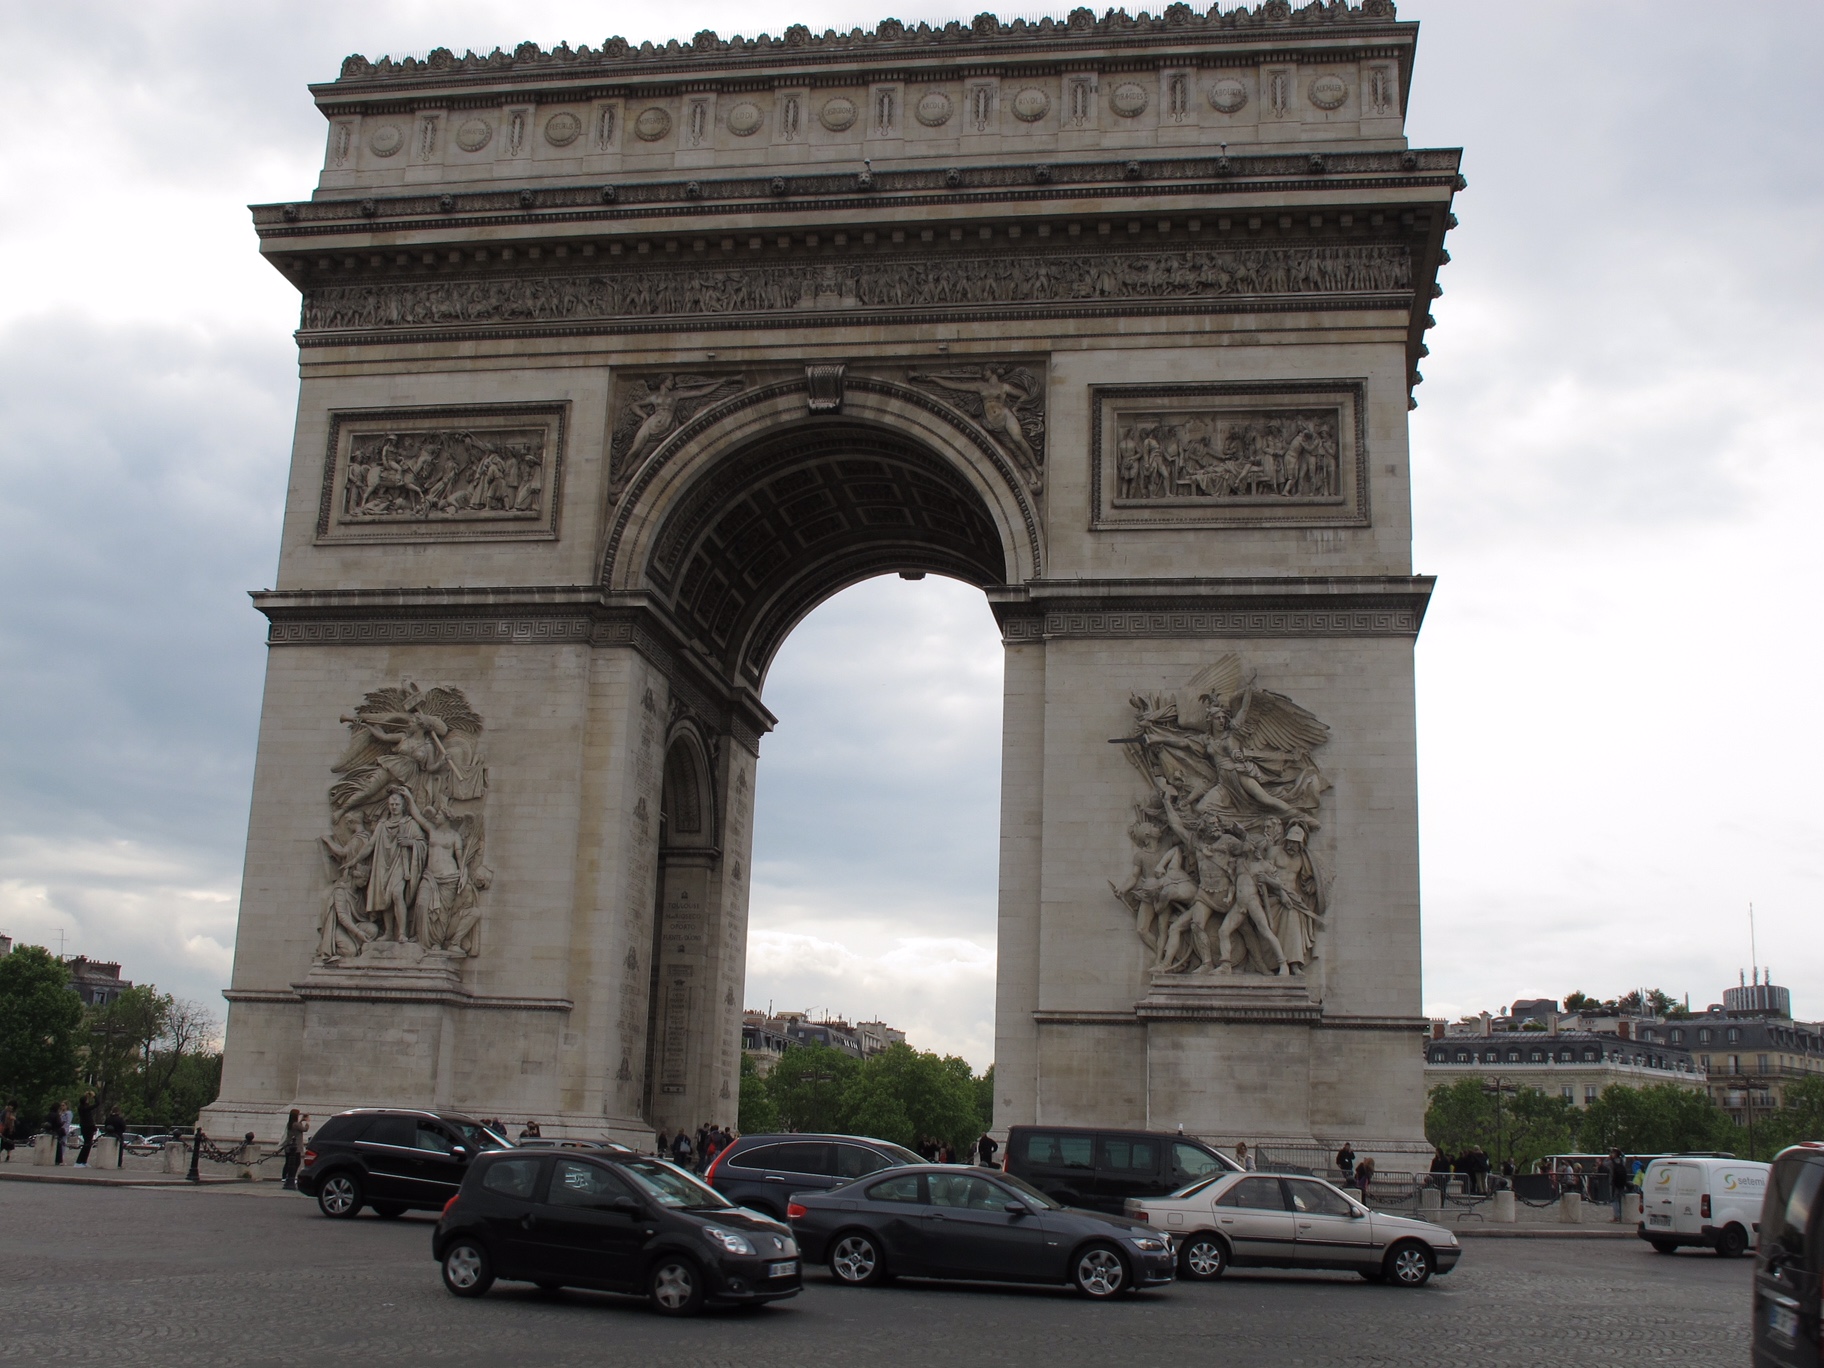 Paris: The Arc de Triomphe